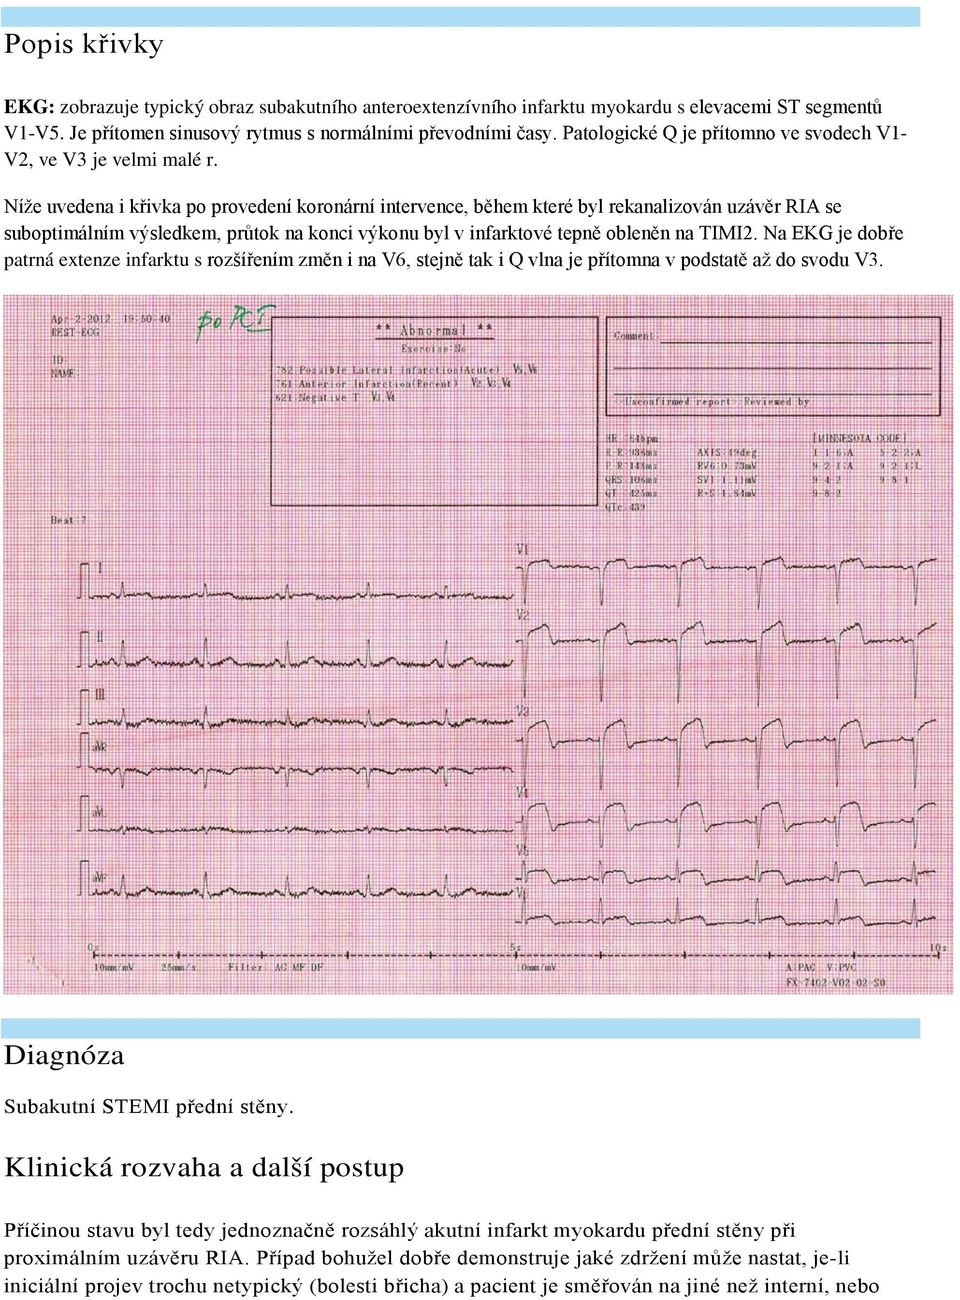 Níže uvedena i křivka po provedení koronární intervence, během které byl rekanalizován uzávěr RIA se suboptimálním výsledkem, průtok na konci výkonu byl v infarktové tepně obleněn na TIMI2.